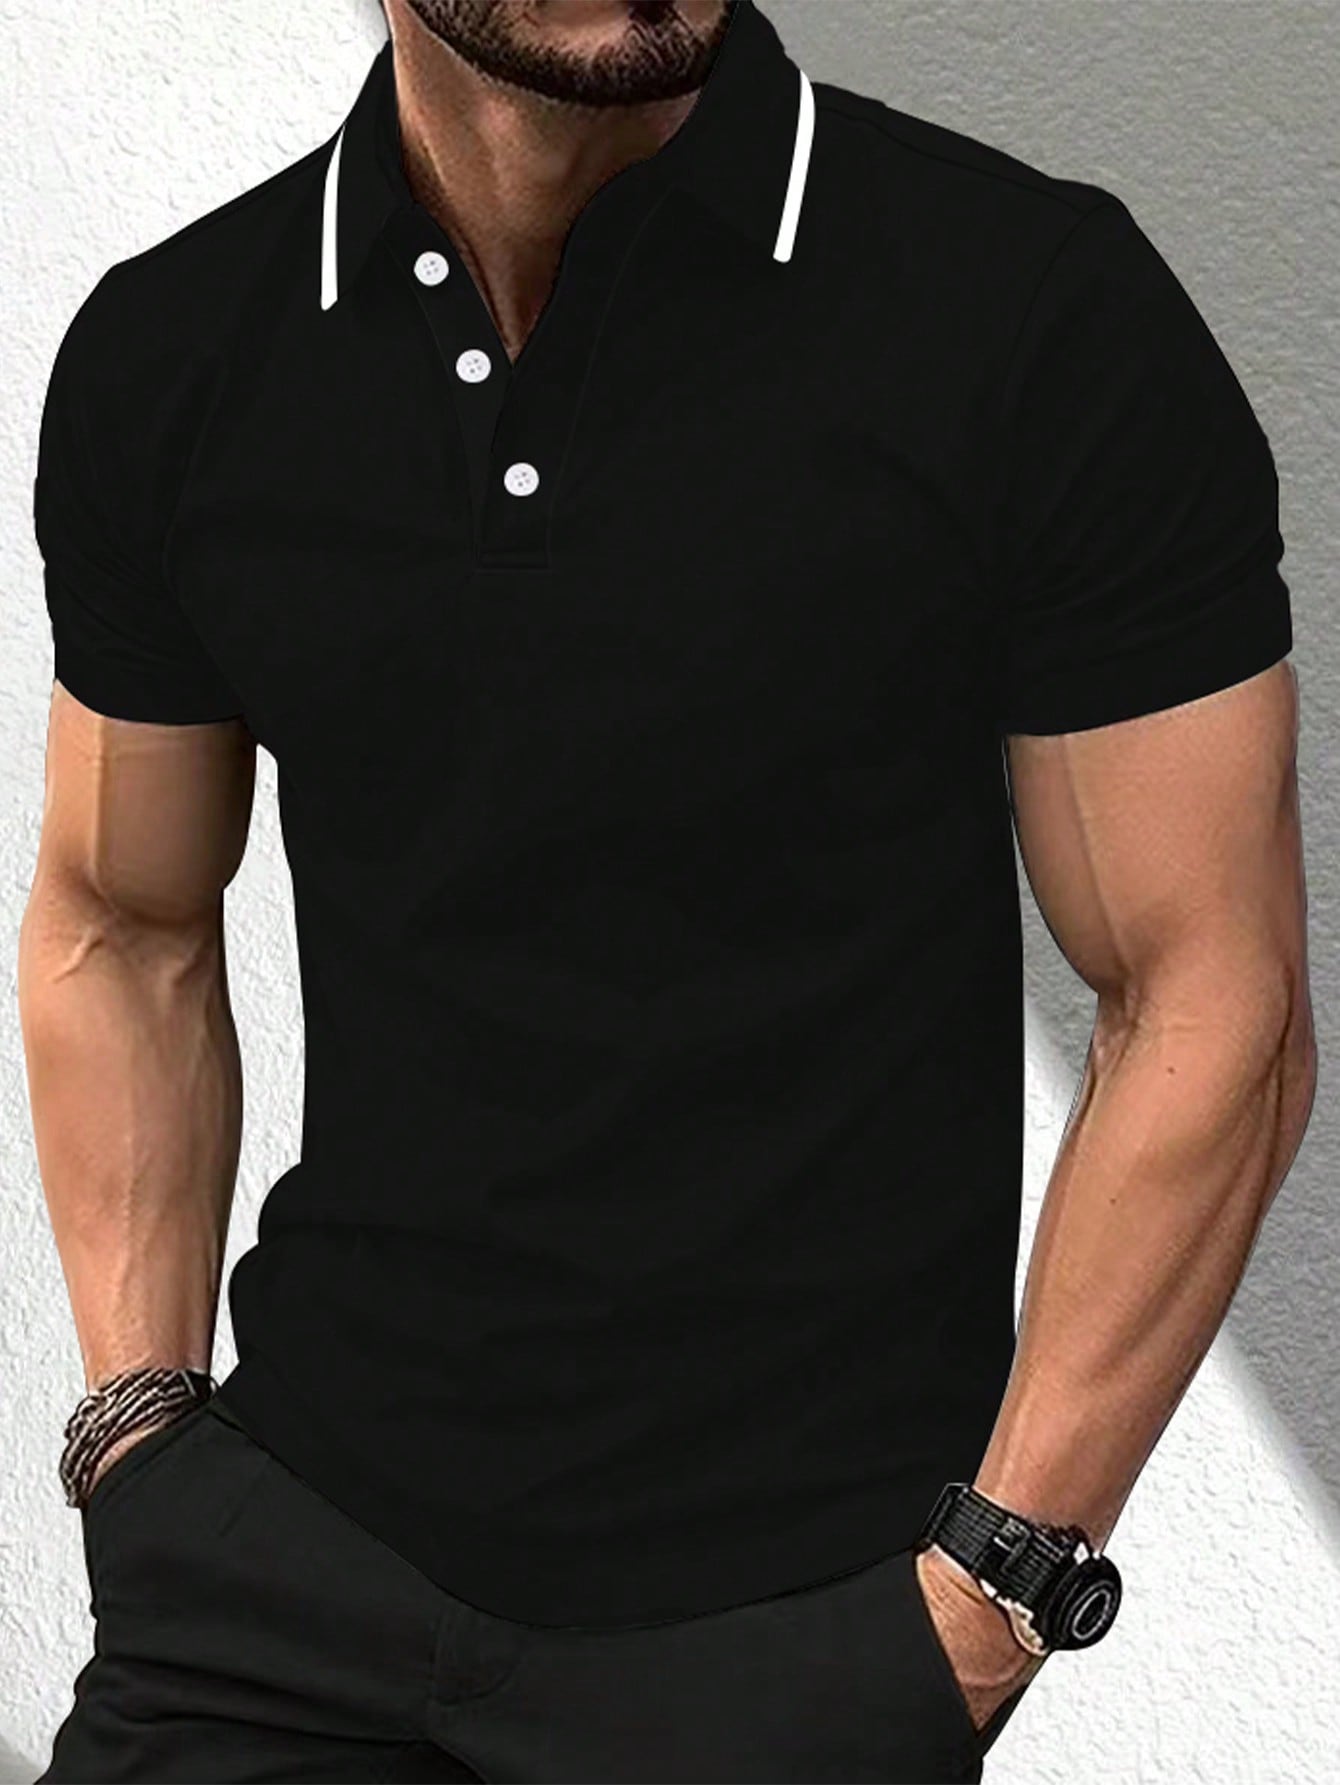 Мужская повседневная рубашка-поло с короткими рукавами и планкой на пуговицах Manfinity Mode, черный мужская повседневная спортивная рубашка поло tuveke спортивная рубашка поло с воротником стойкой и короткими рукавами высококачественная о